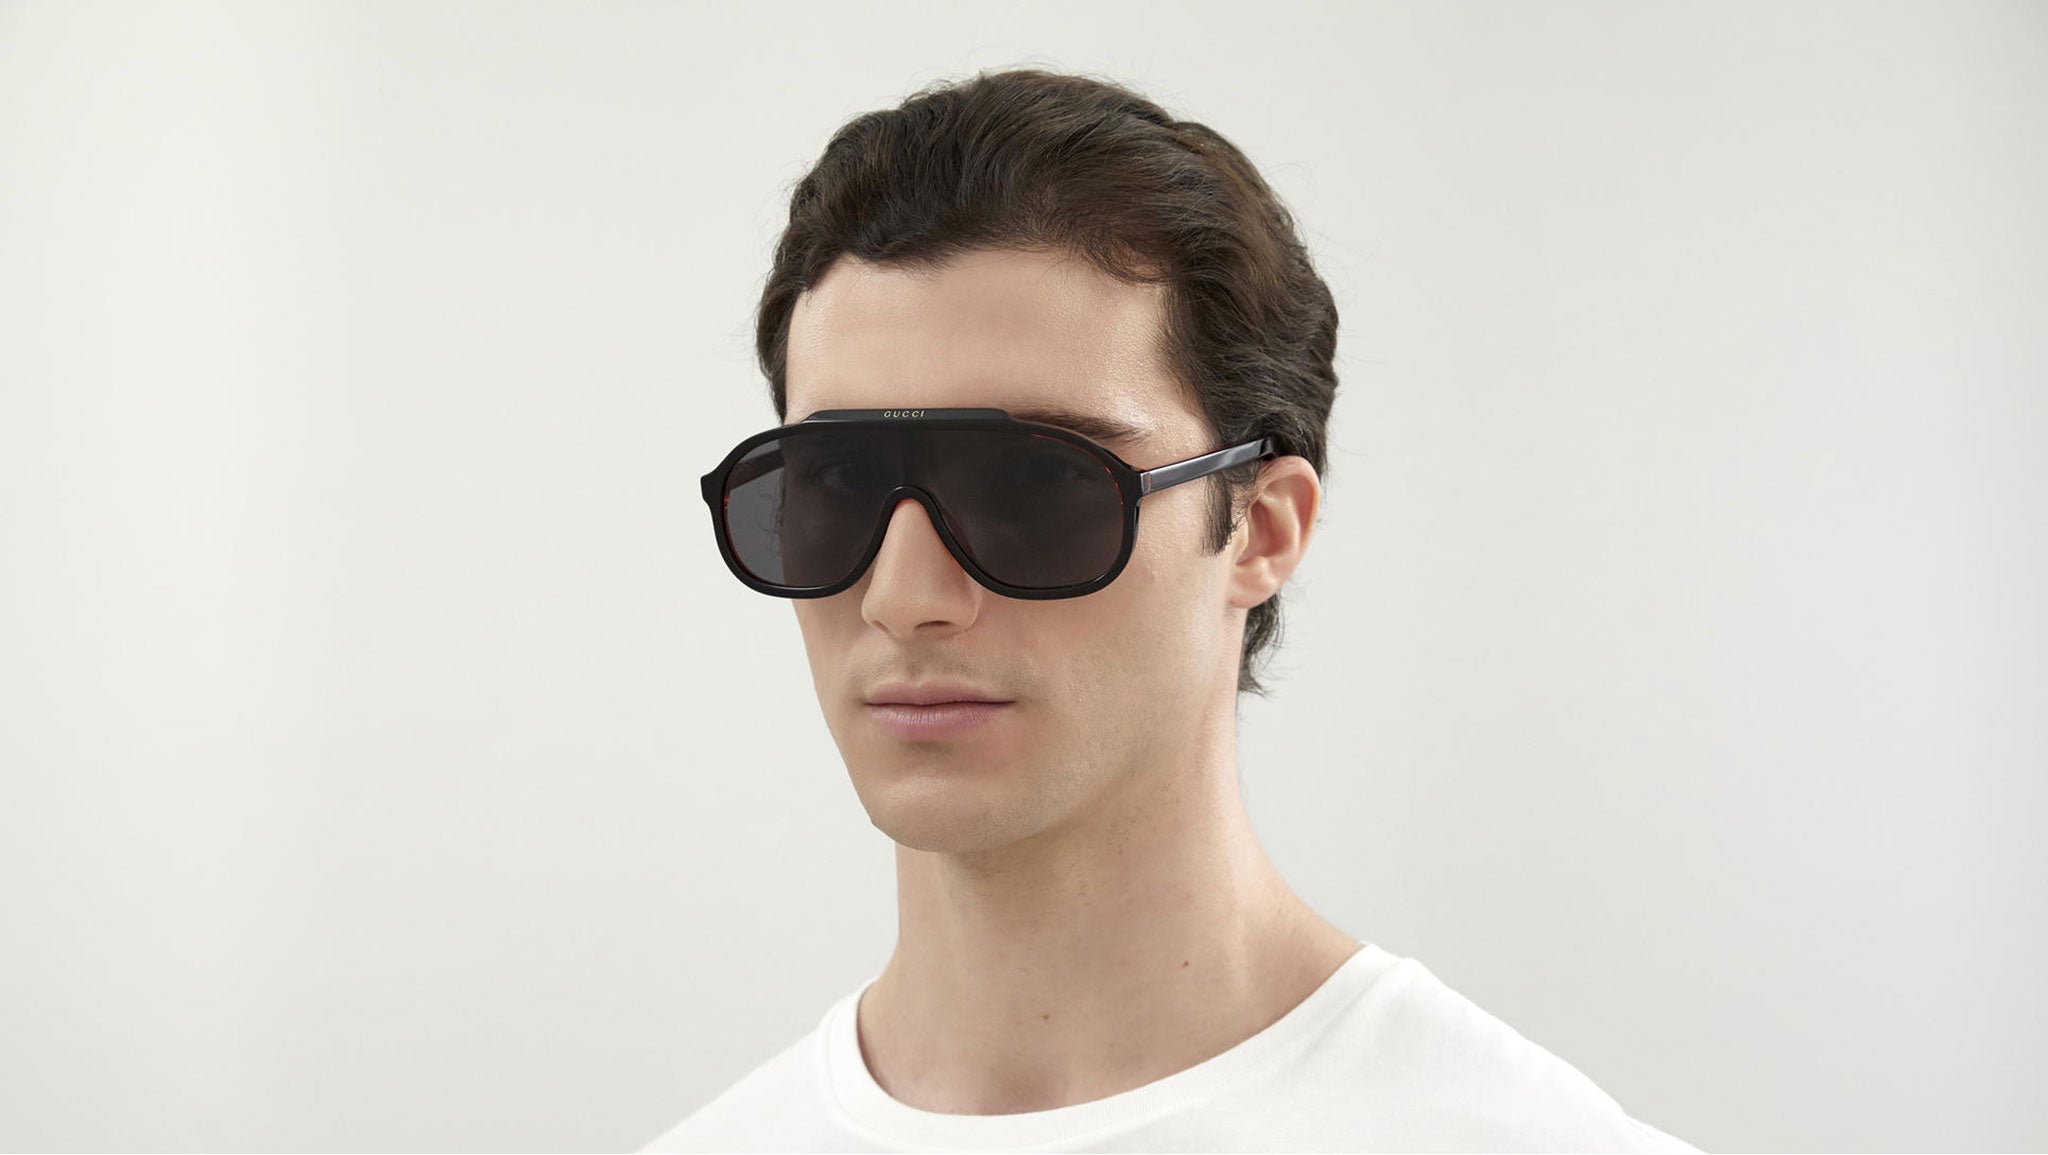 Gucci Ski Goggle Sunglasses, 99mm